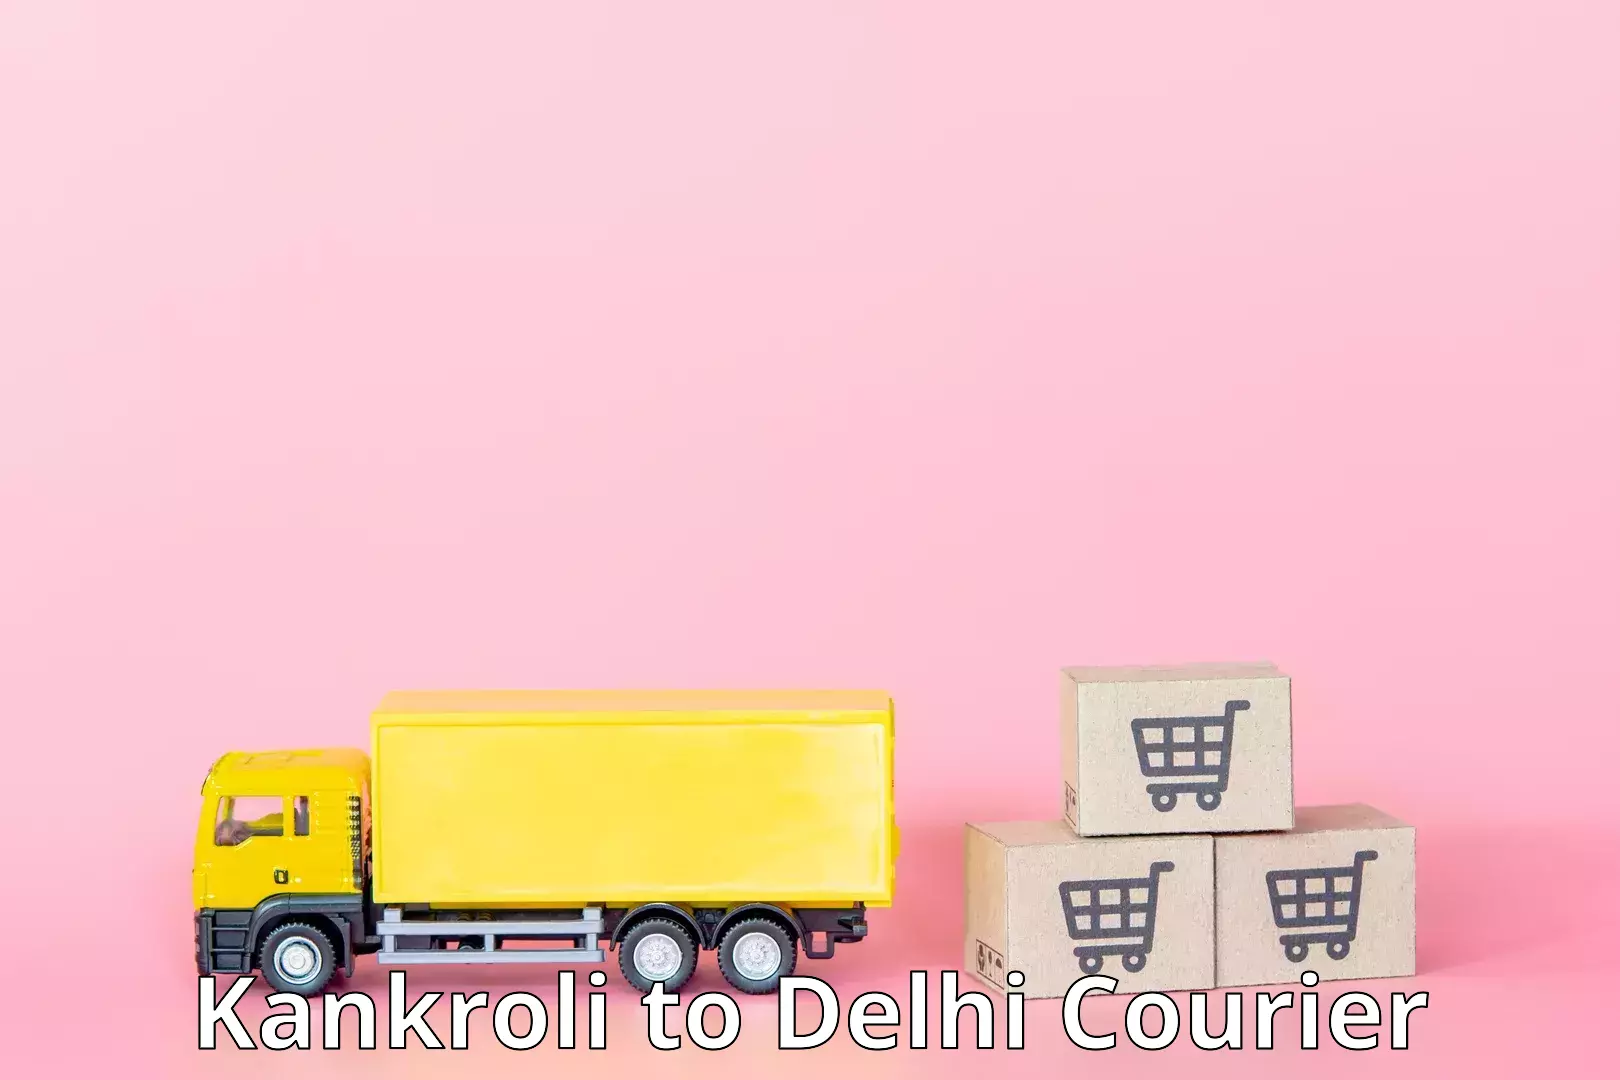 Local delivery service Kankroli to Delhi